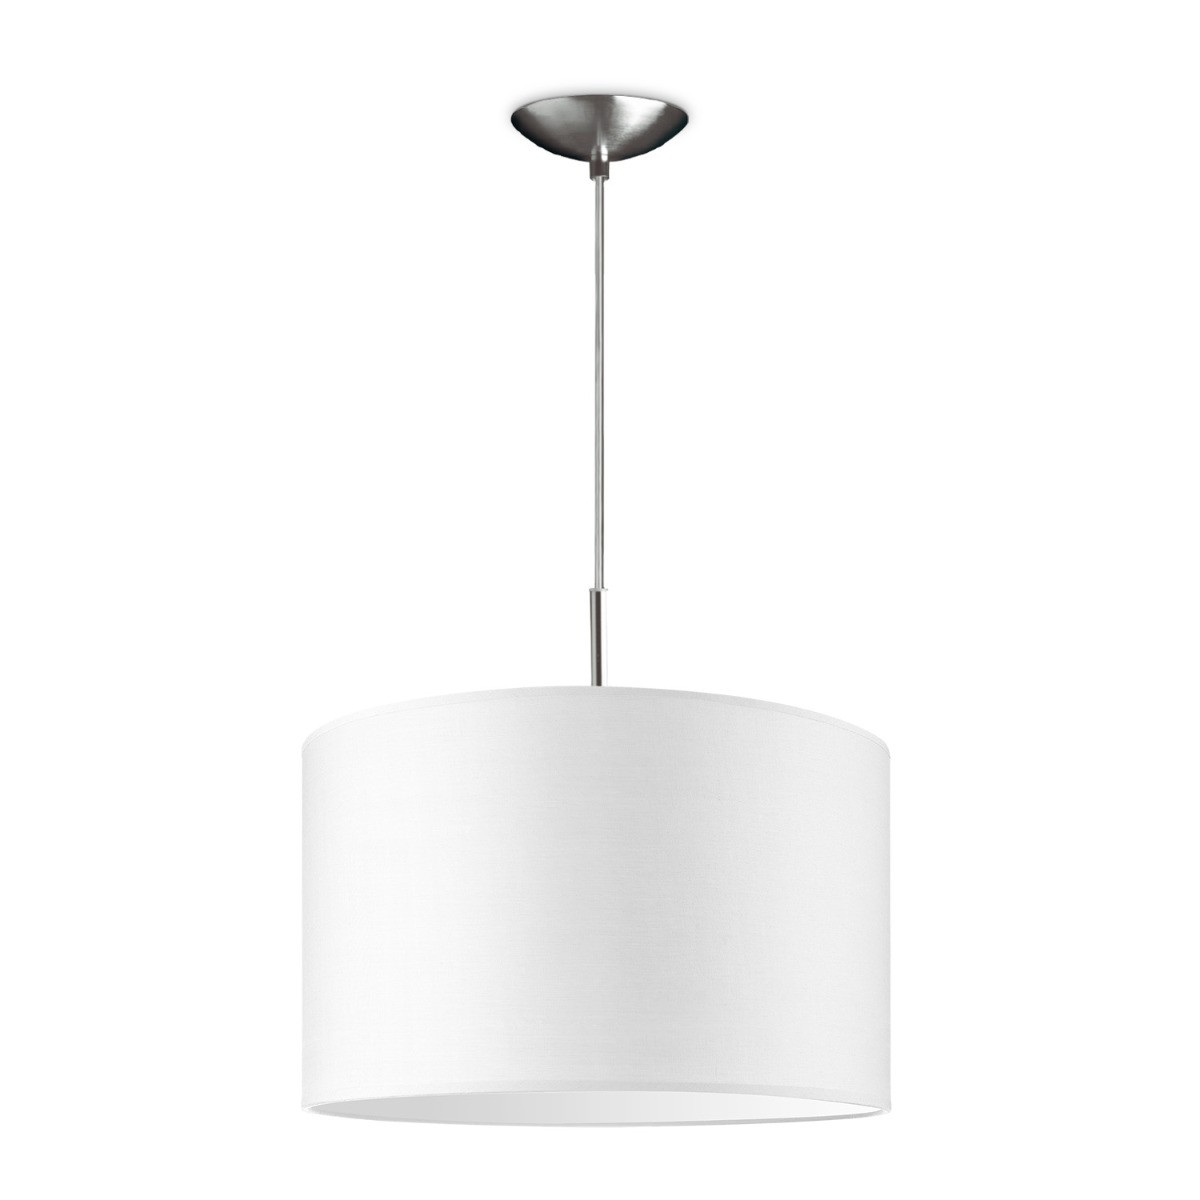 Light depot - hanglamp tube deluxe bling Ø 35 cm - wit - Outlet